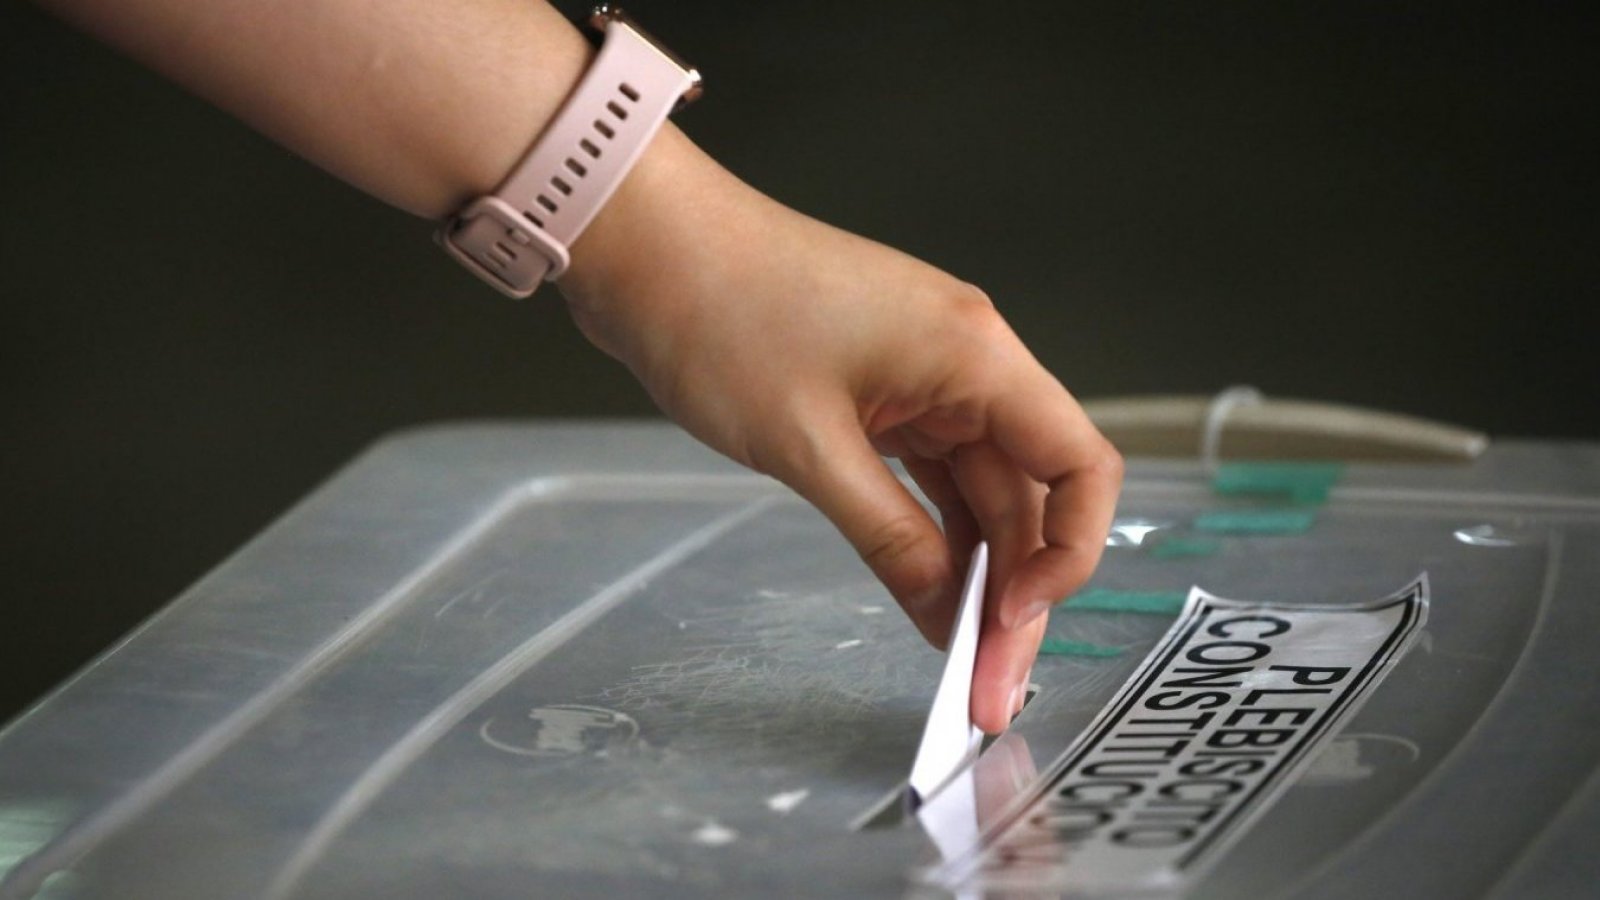 Mano de mujer ingresando un voto a una urna de votación.